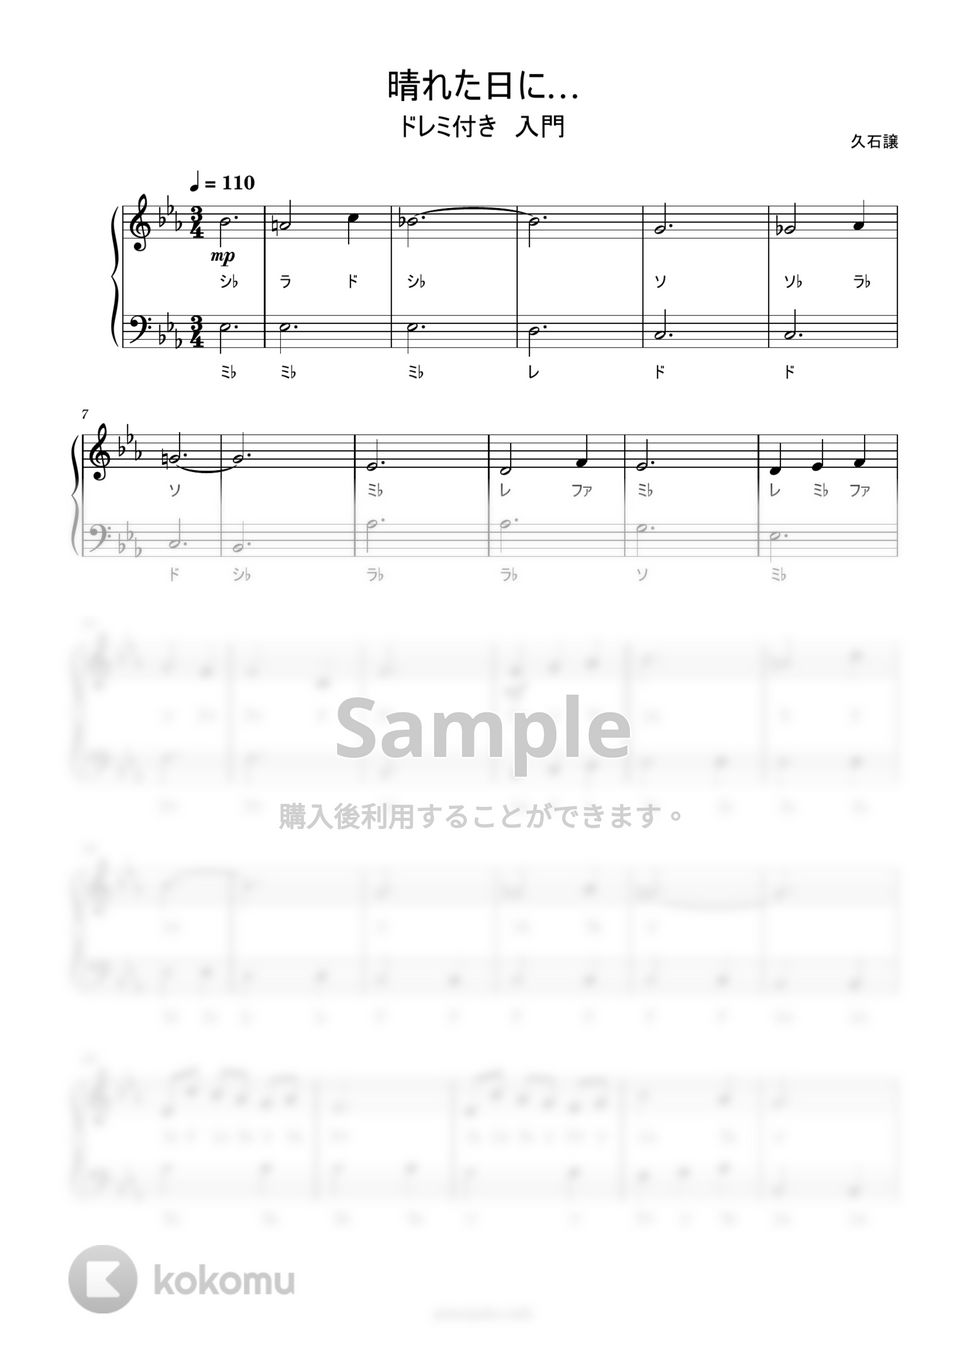 久石譲 - 晴れた日に… (ドレミ付き/簡単楽譜) by ピアノ塾